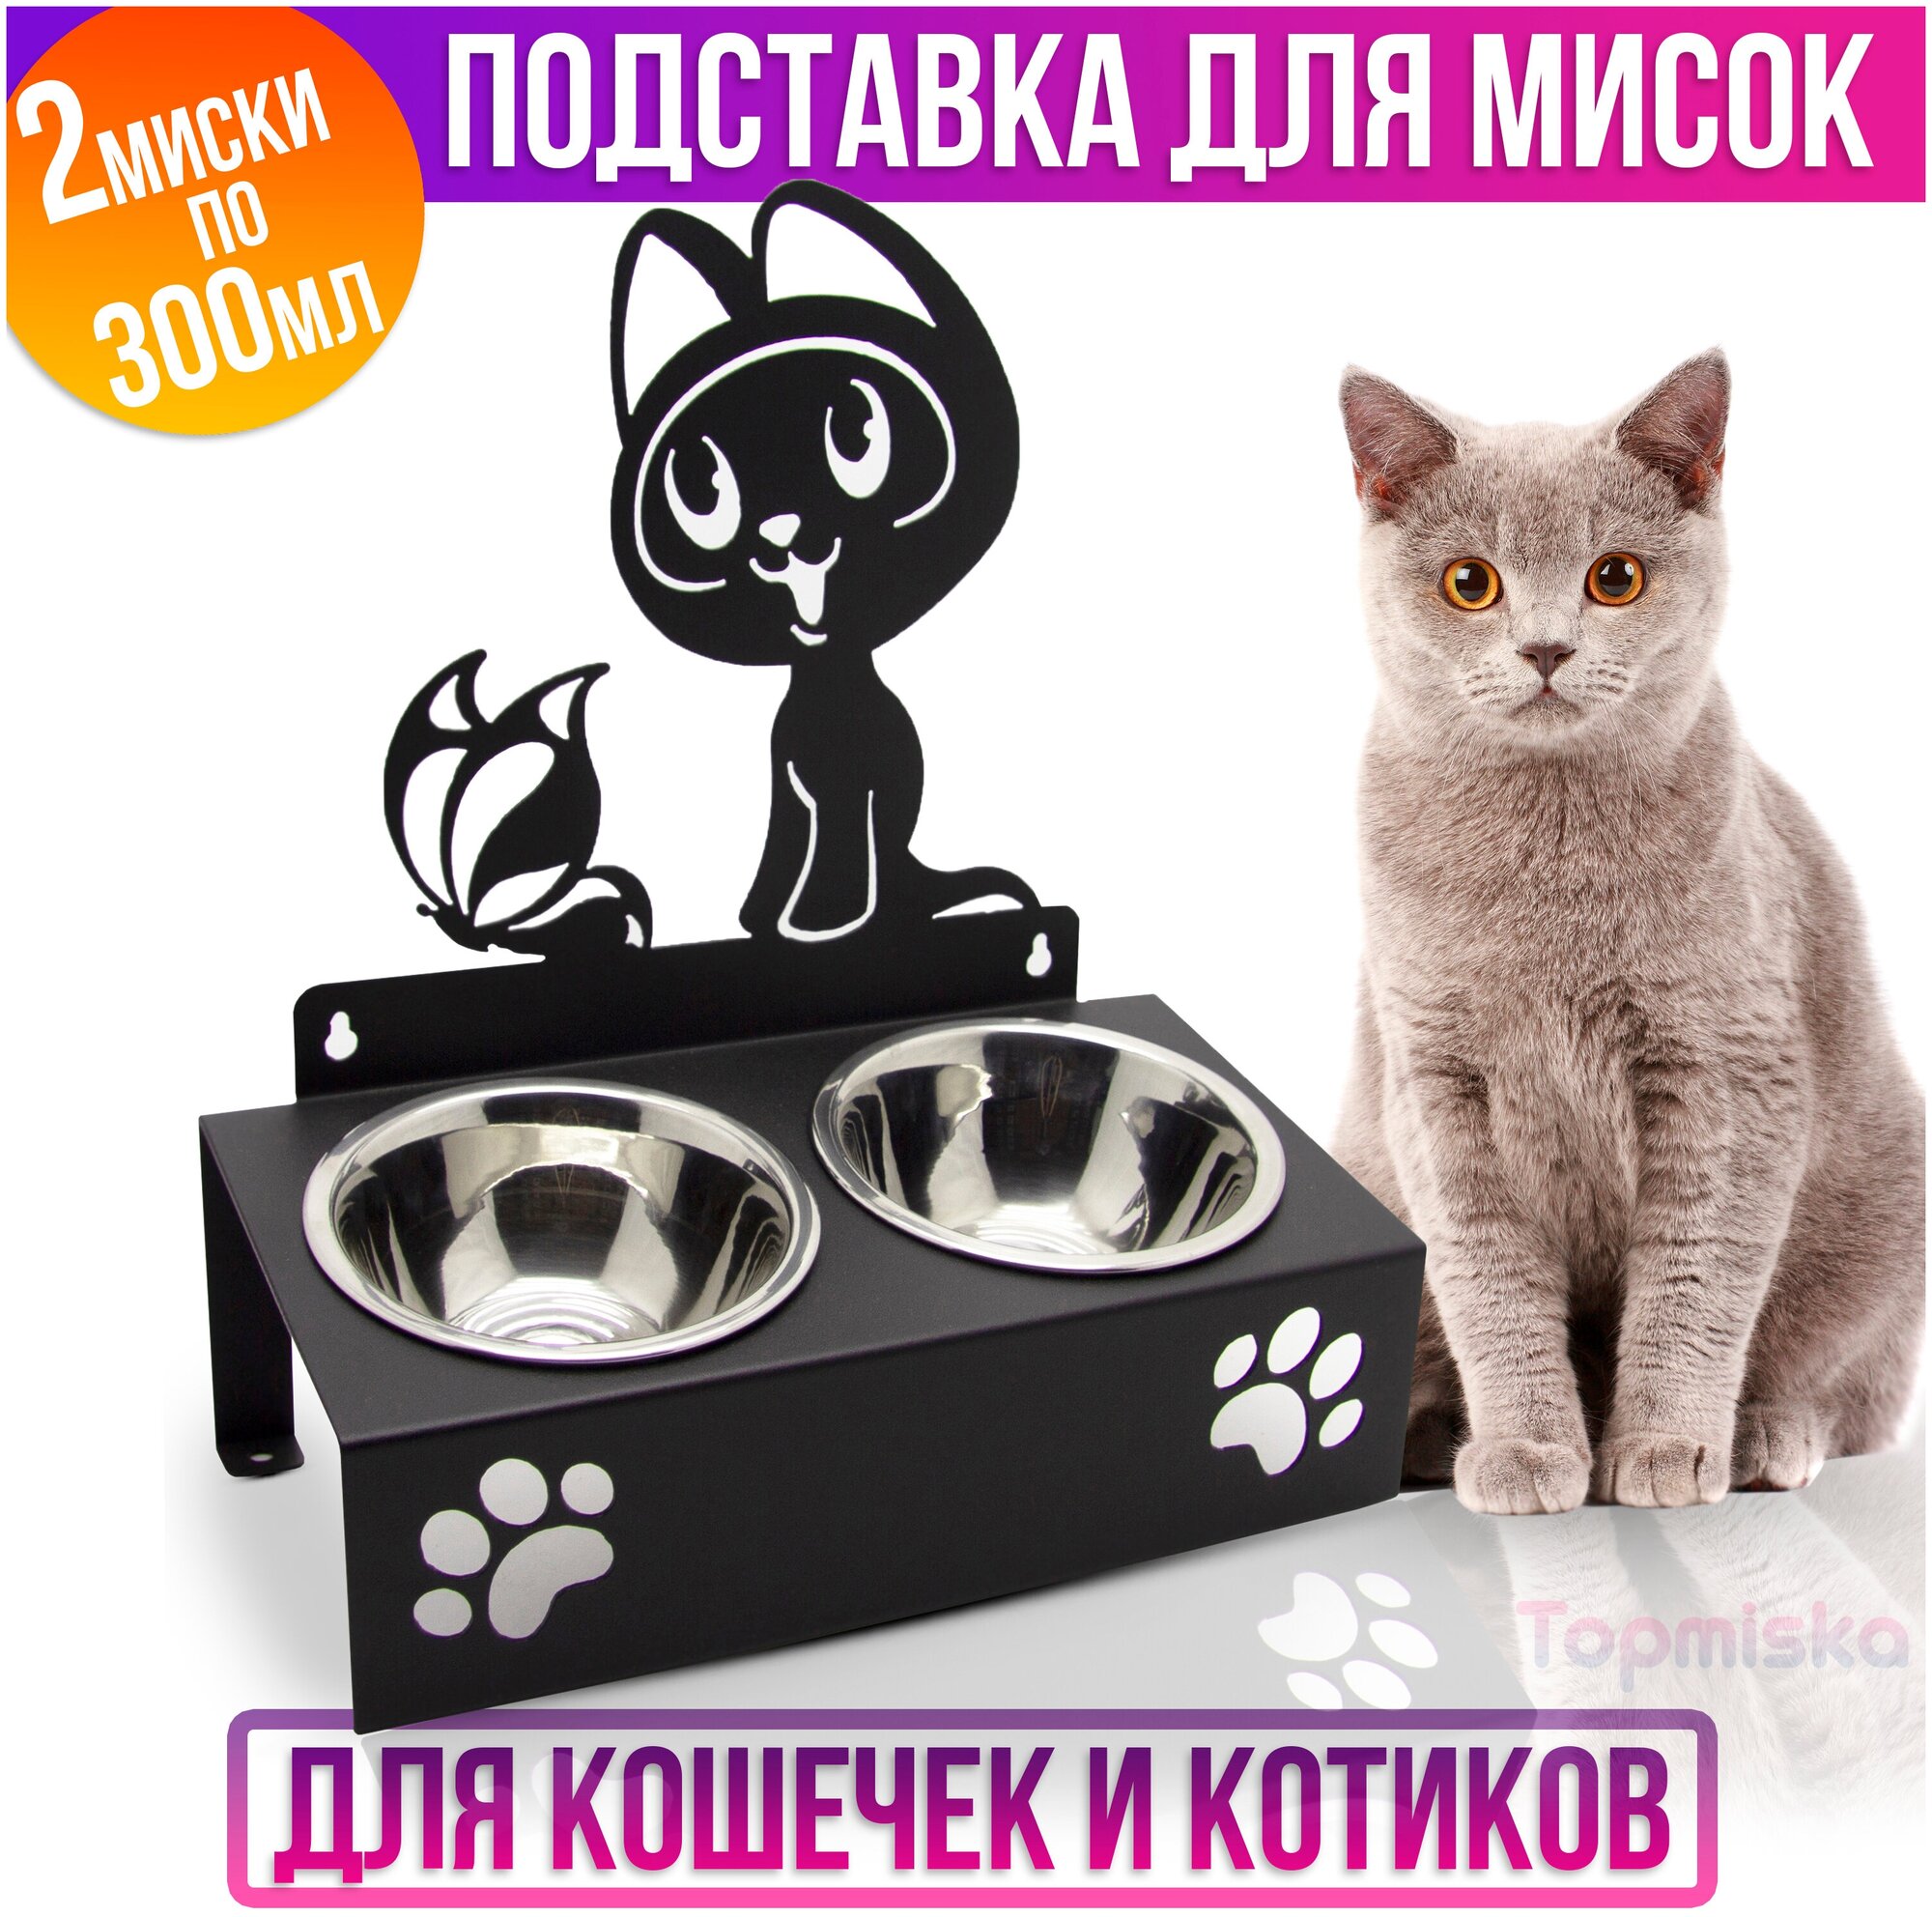 Подставка для мисок двойная с наклоном Topmiska, миски 2х300мл, изображение Котёнок гав, цвет черный - фотография № 1